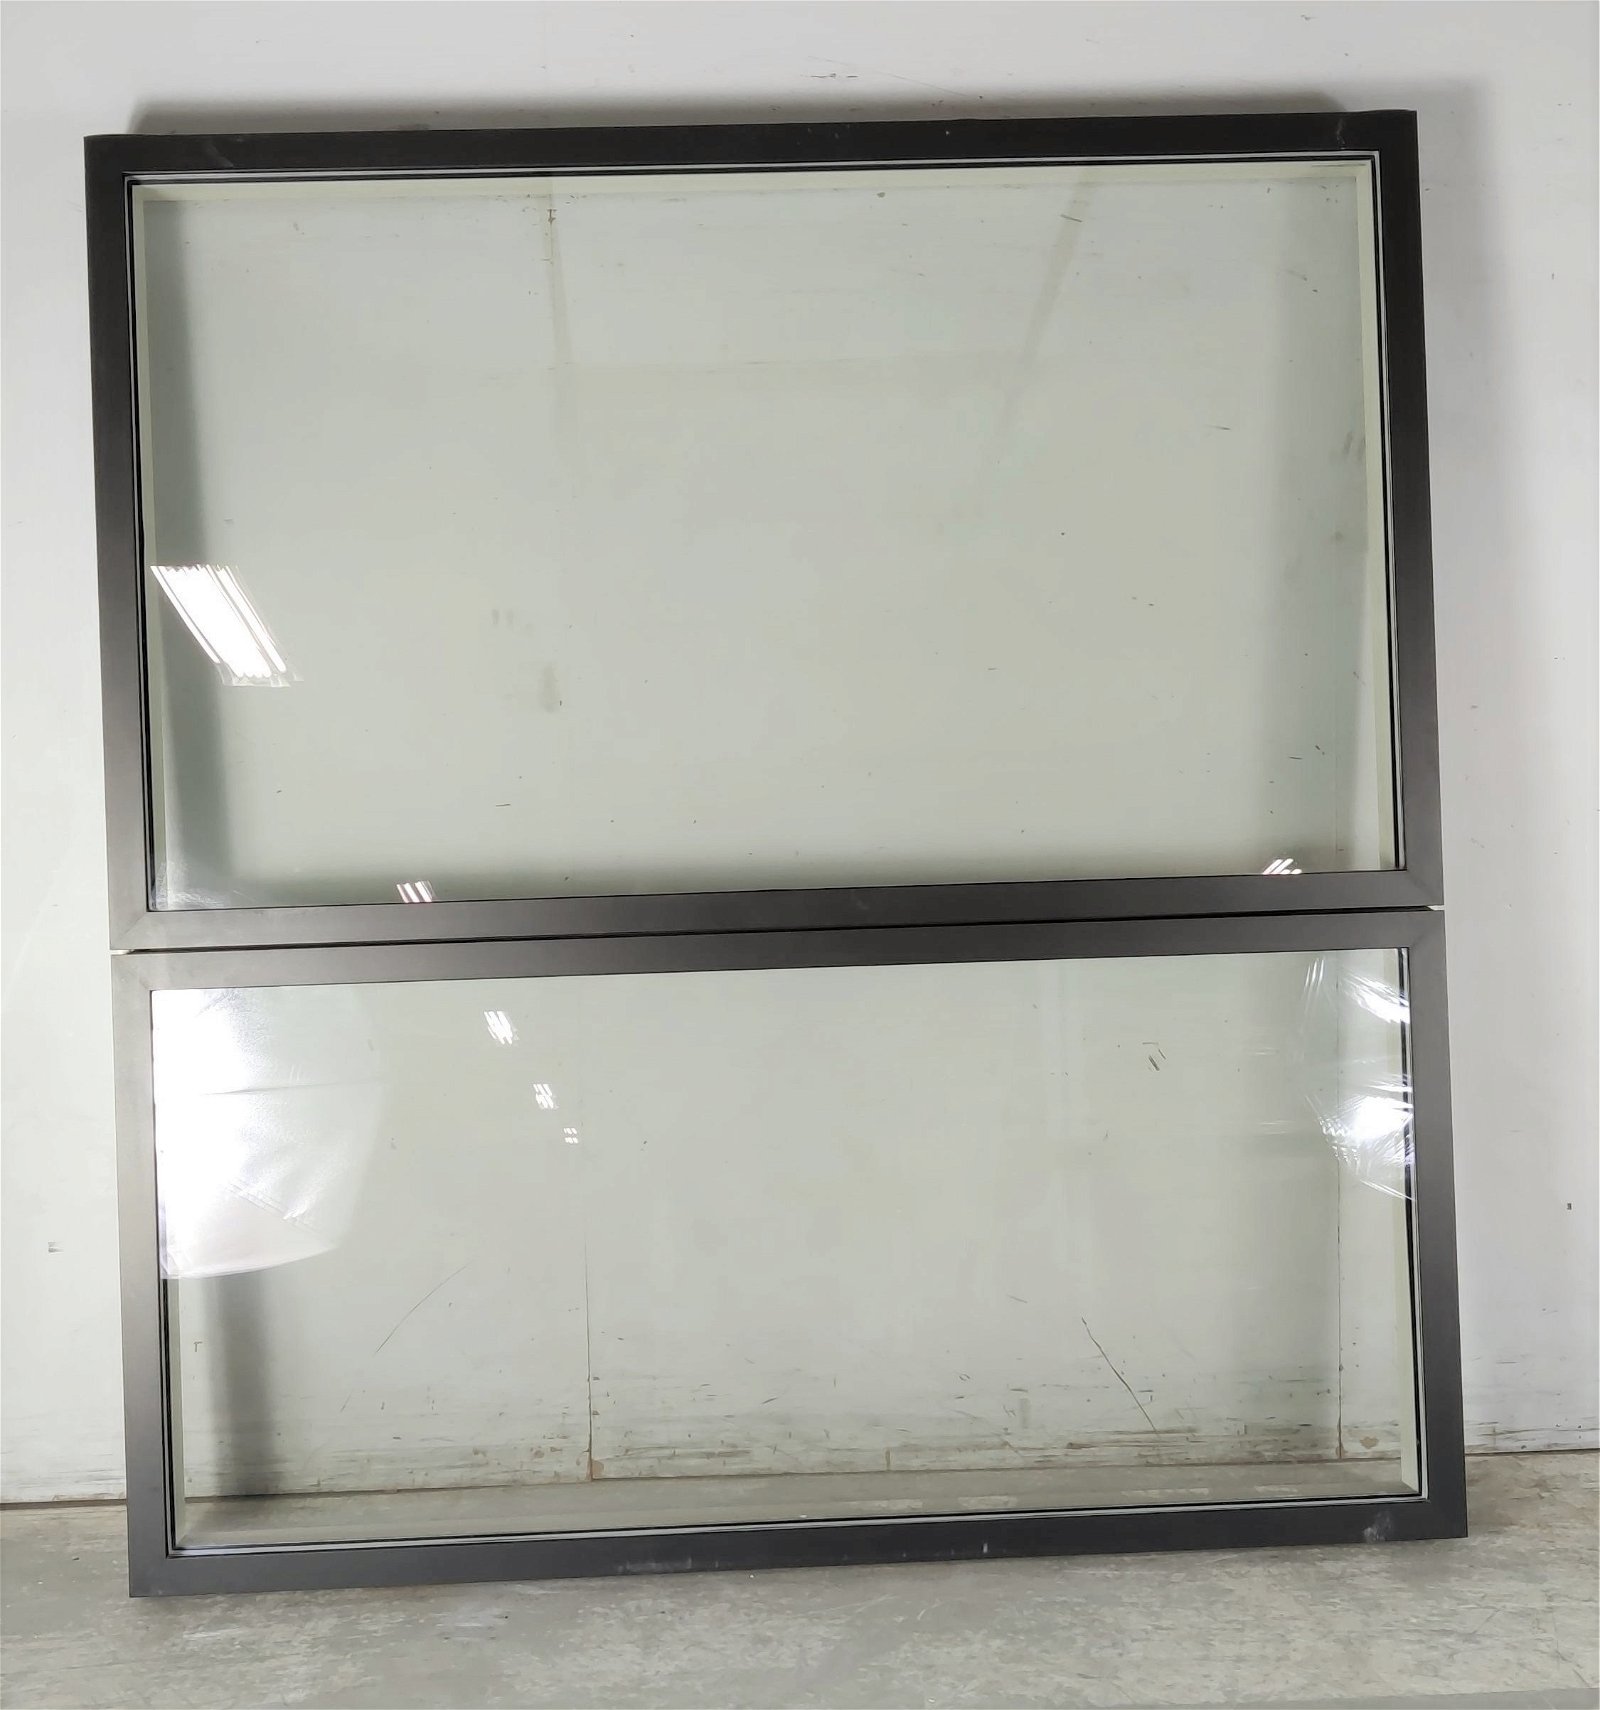 Fastkarm vindue fra Velfac, Klar glas, Træ/alu, G60 granit antracit 198,7 X 212,5 